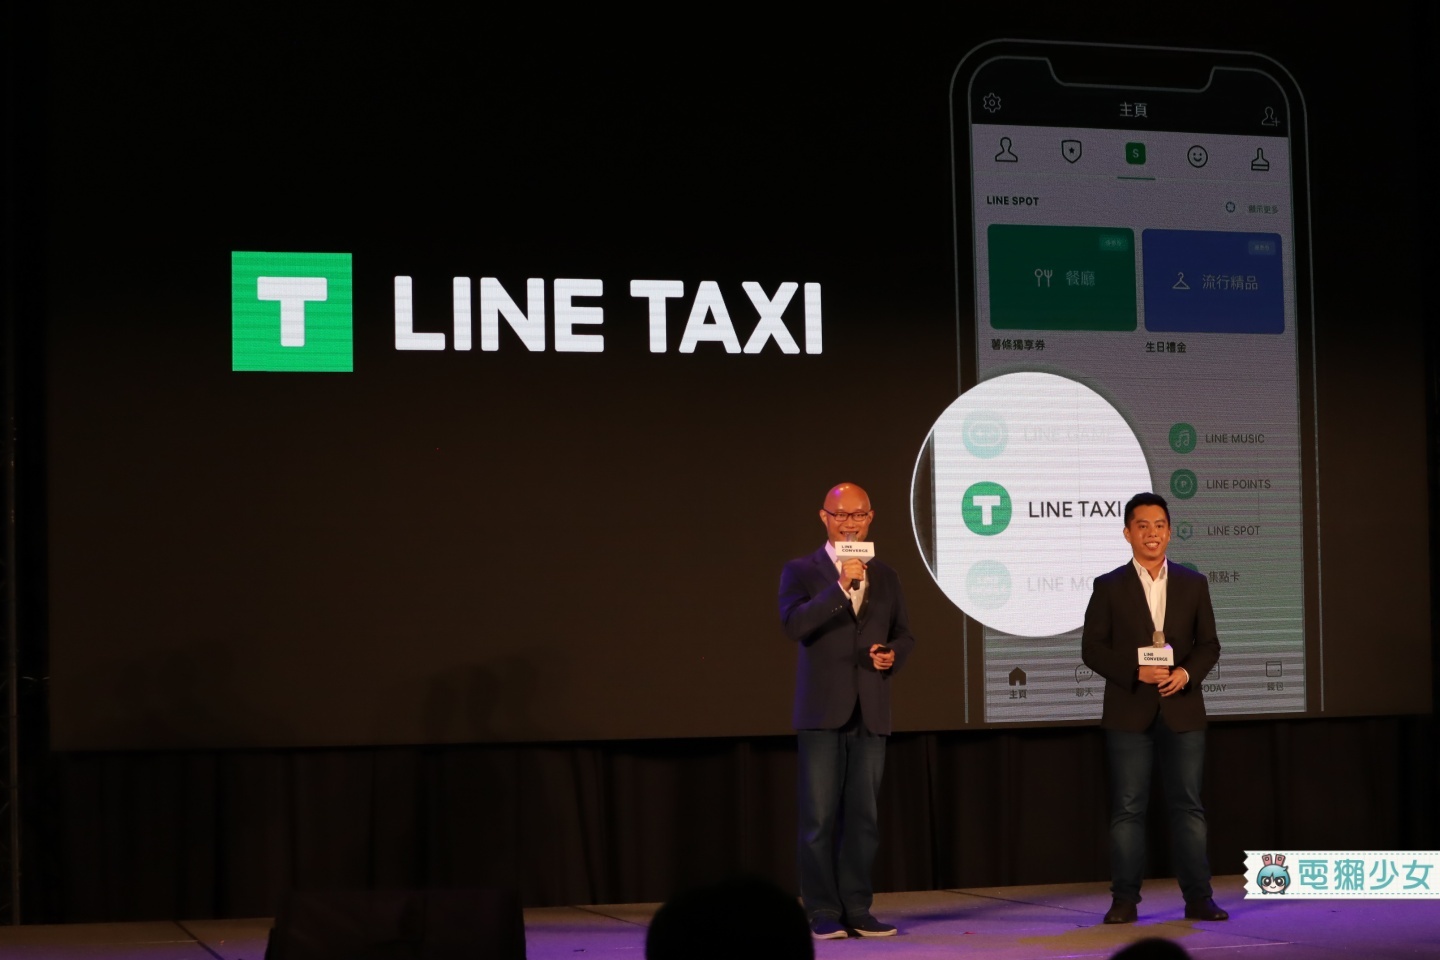 出門｜新功能！『 LINE TAXI 』用 LINE 就可以叫計程車！『 LINE SPOT 』幫你整理附近商店資訊，不用再煩惱要吃什麼啦！